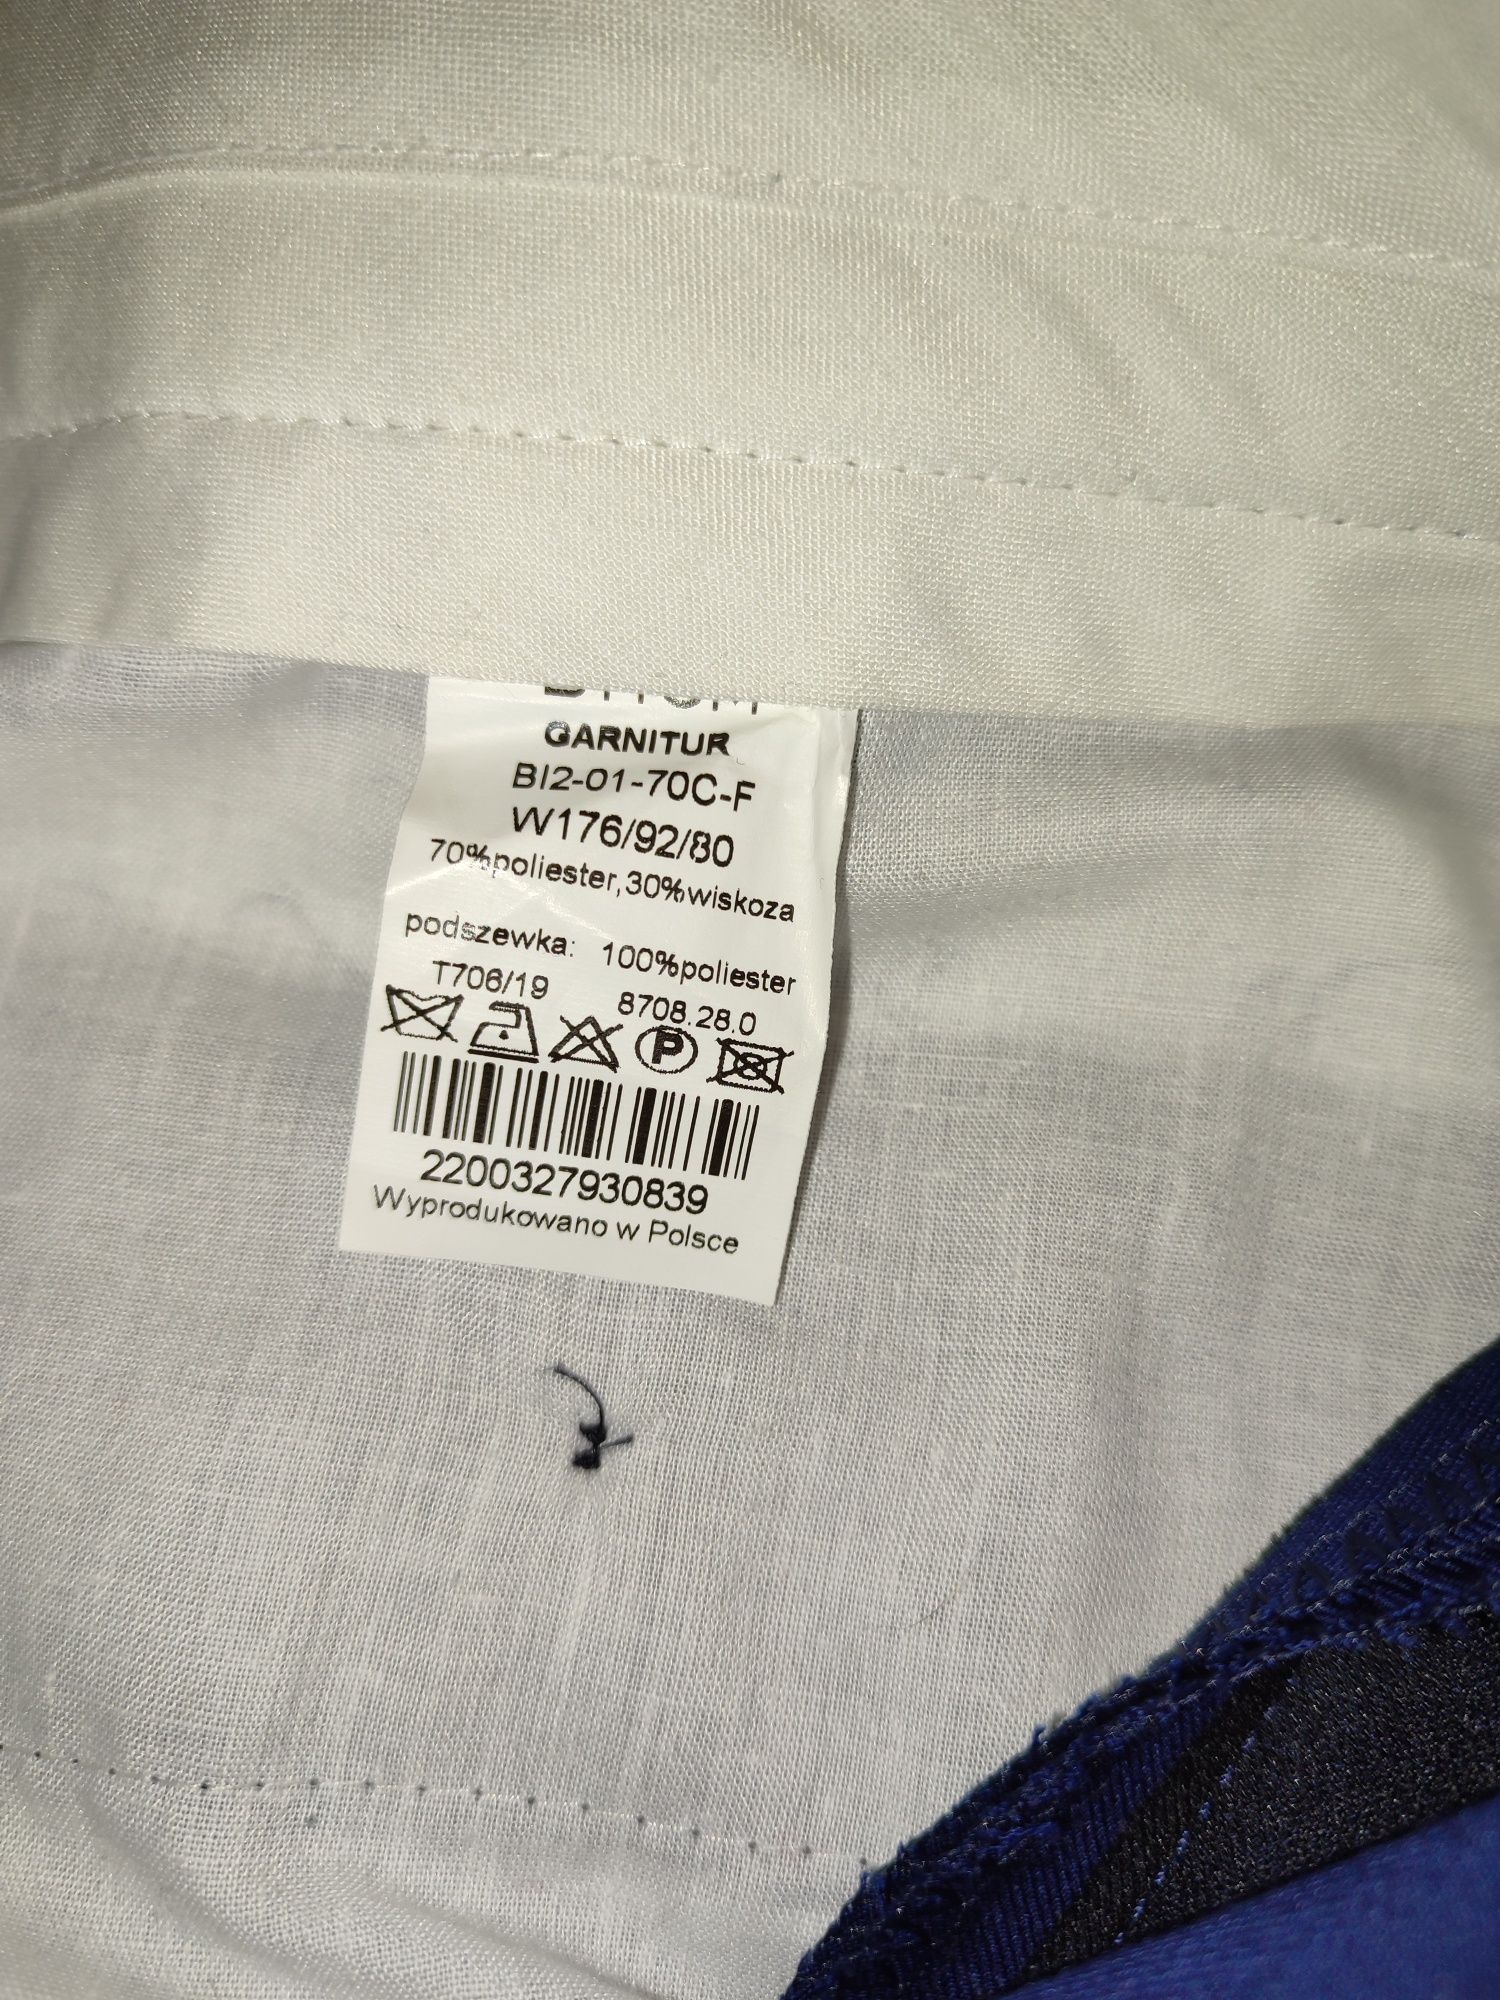 Garnitur Bytom 170 biała koszula w tym samym rozmiarze gratis